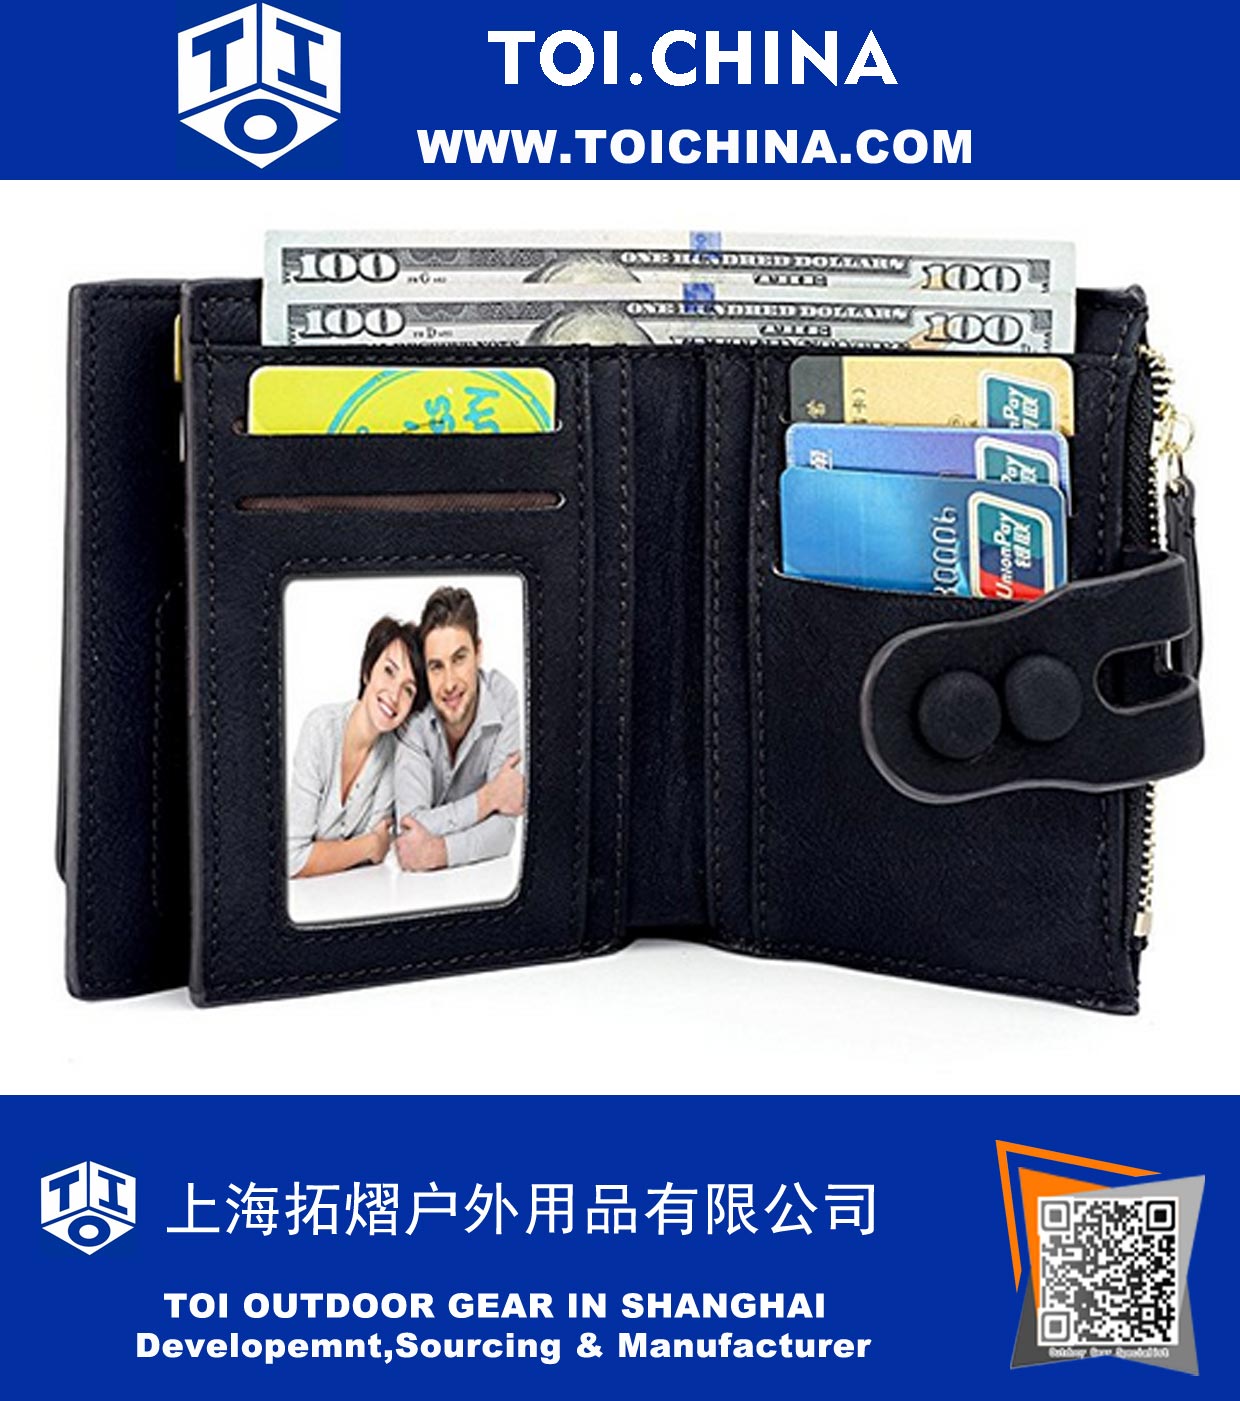 Wallet Card Holder